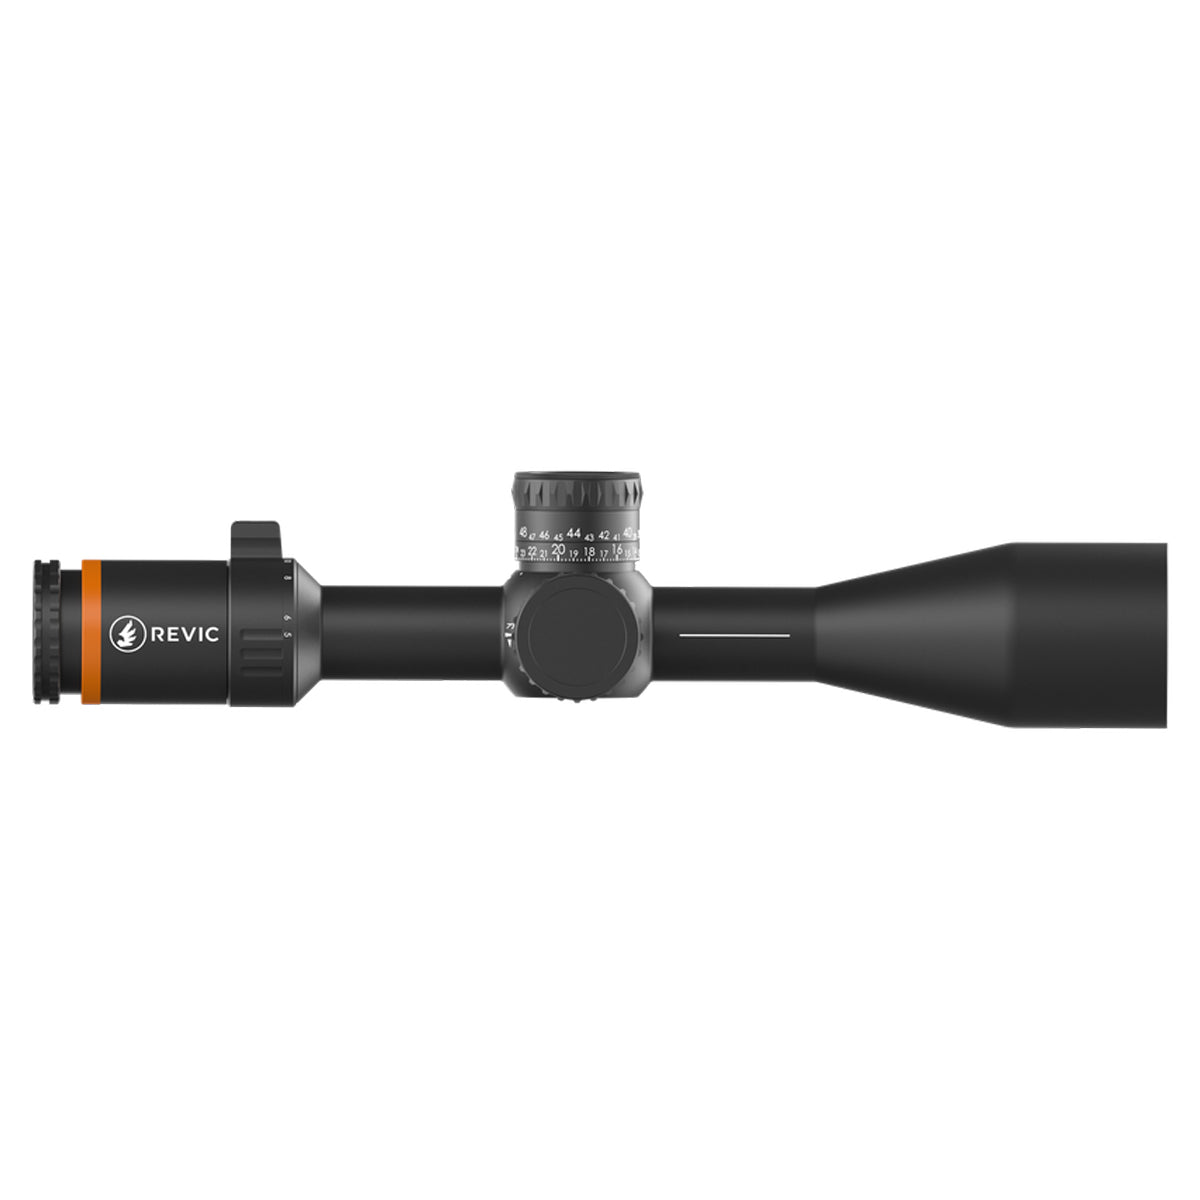 Revic Acura RS25i 5-25x50 Illuminated Riflescope